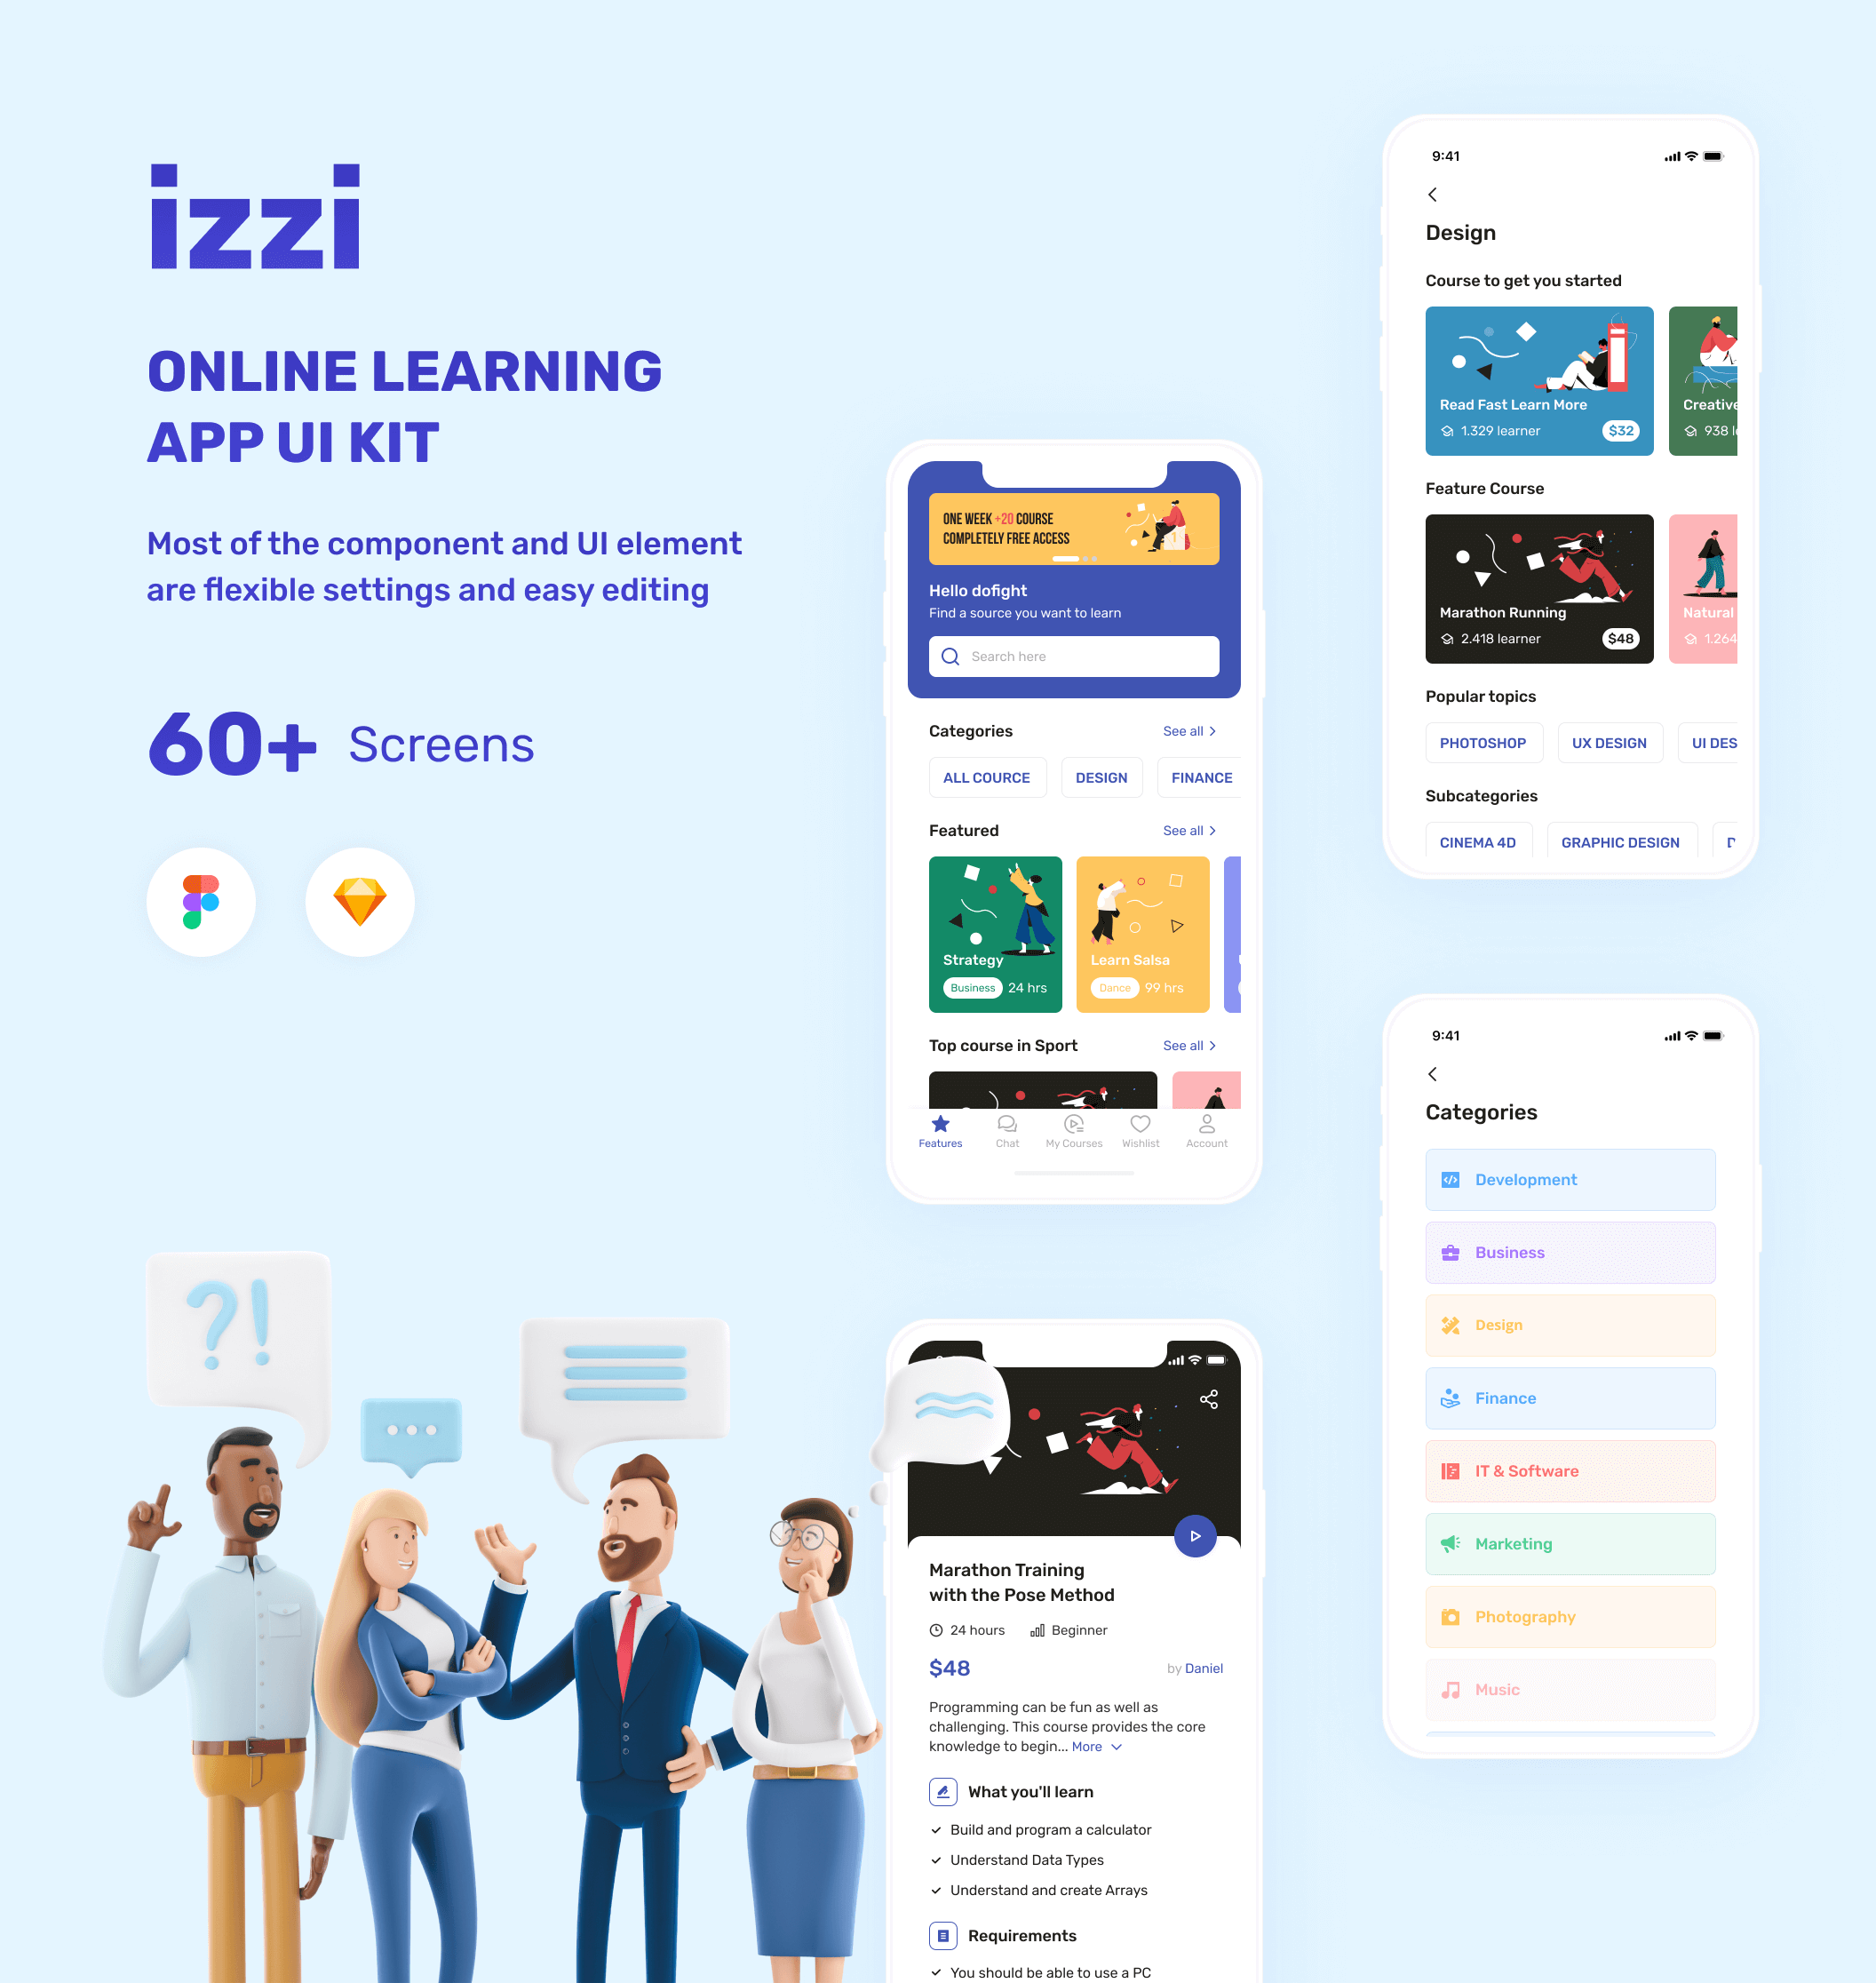 在线培训网络教育移动应用程序素材模版下载izzi – Online Learning App UI Kit插图1